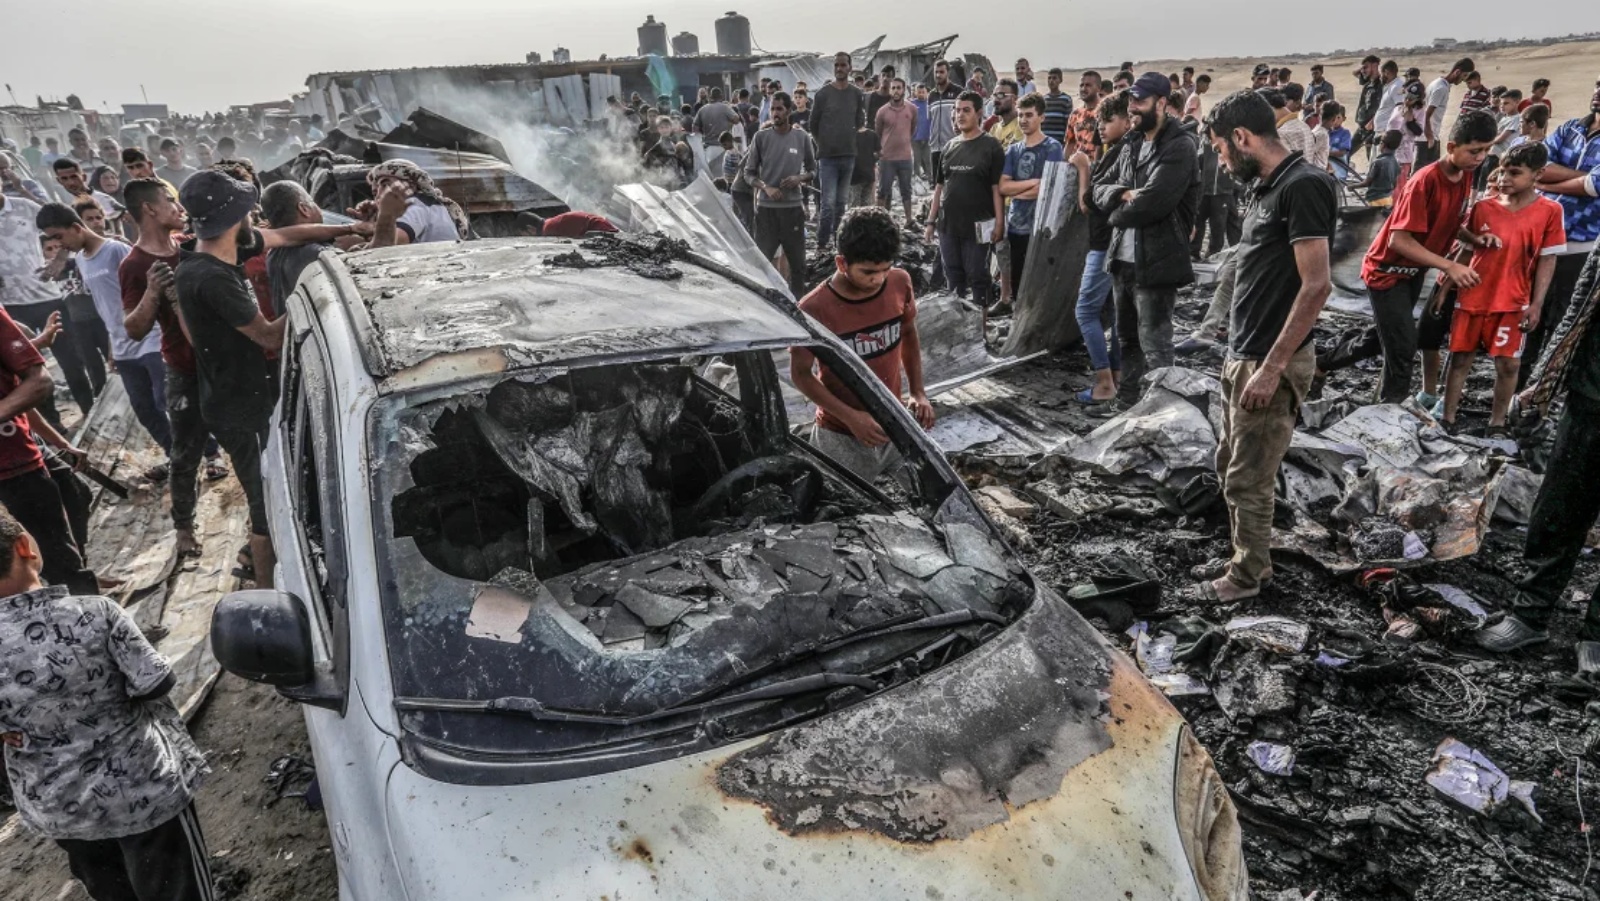 فلسطينيون يتجمعون حول سيارة محترقة بعد غارة جوية إسرائيلية على مخيم في مدينة رفح جنوب قطاع غزة يوم الاثنين